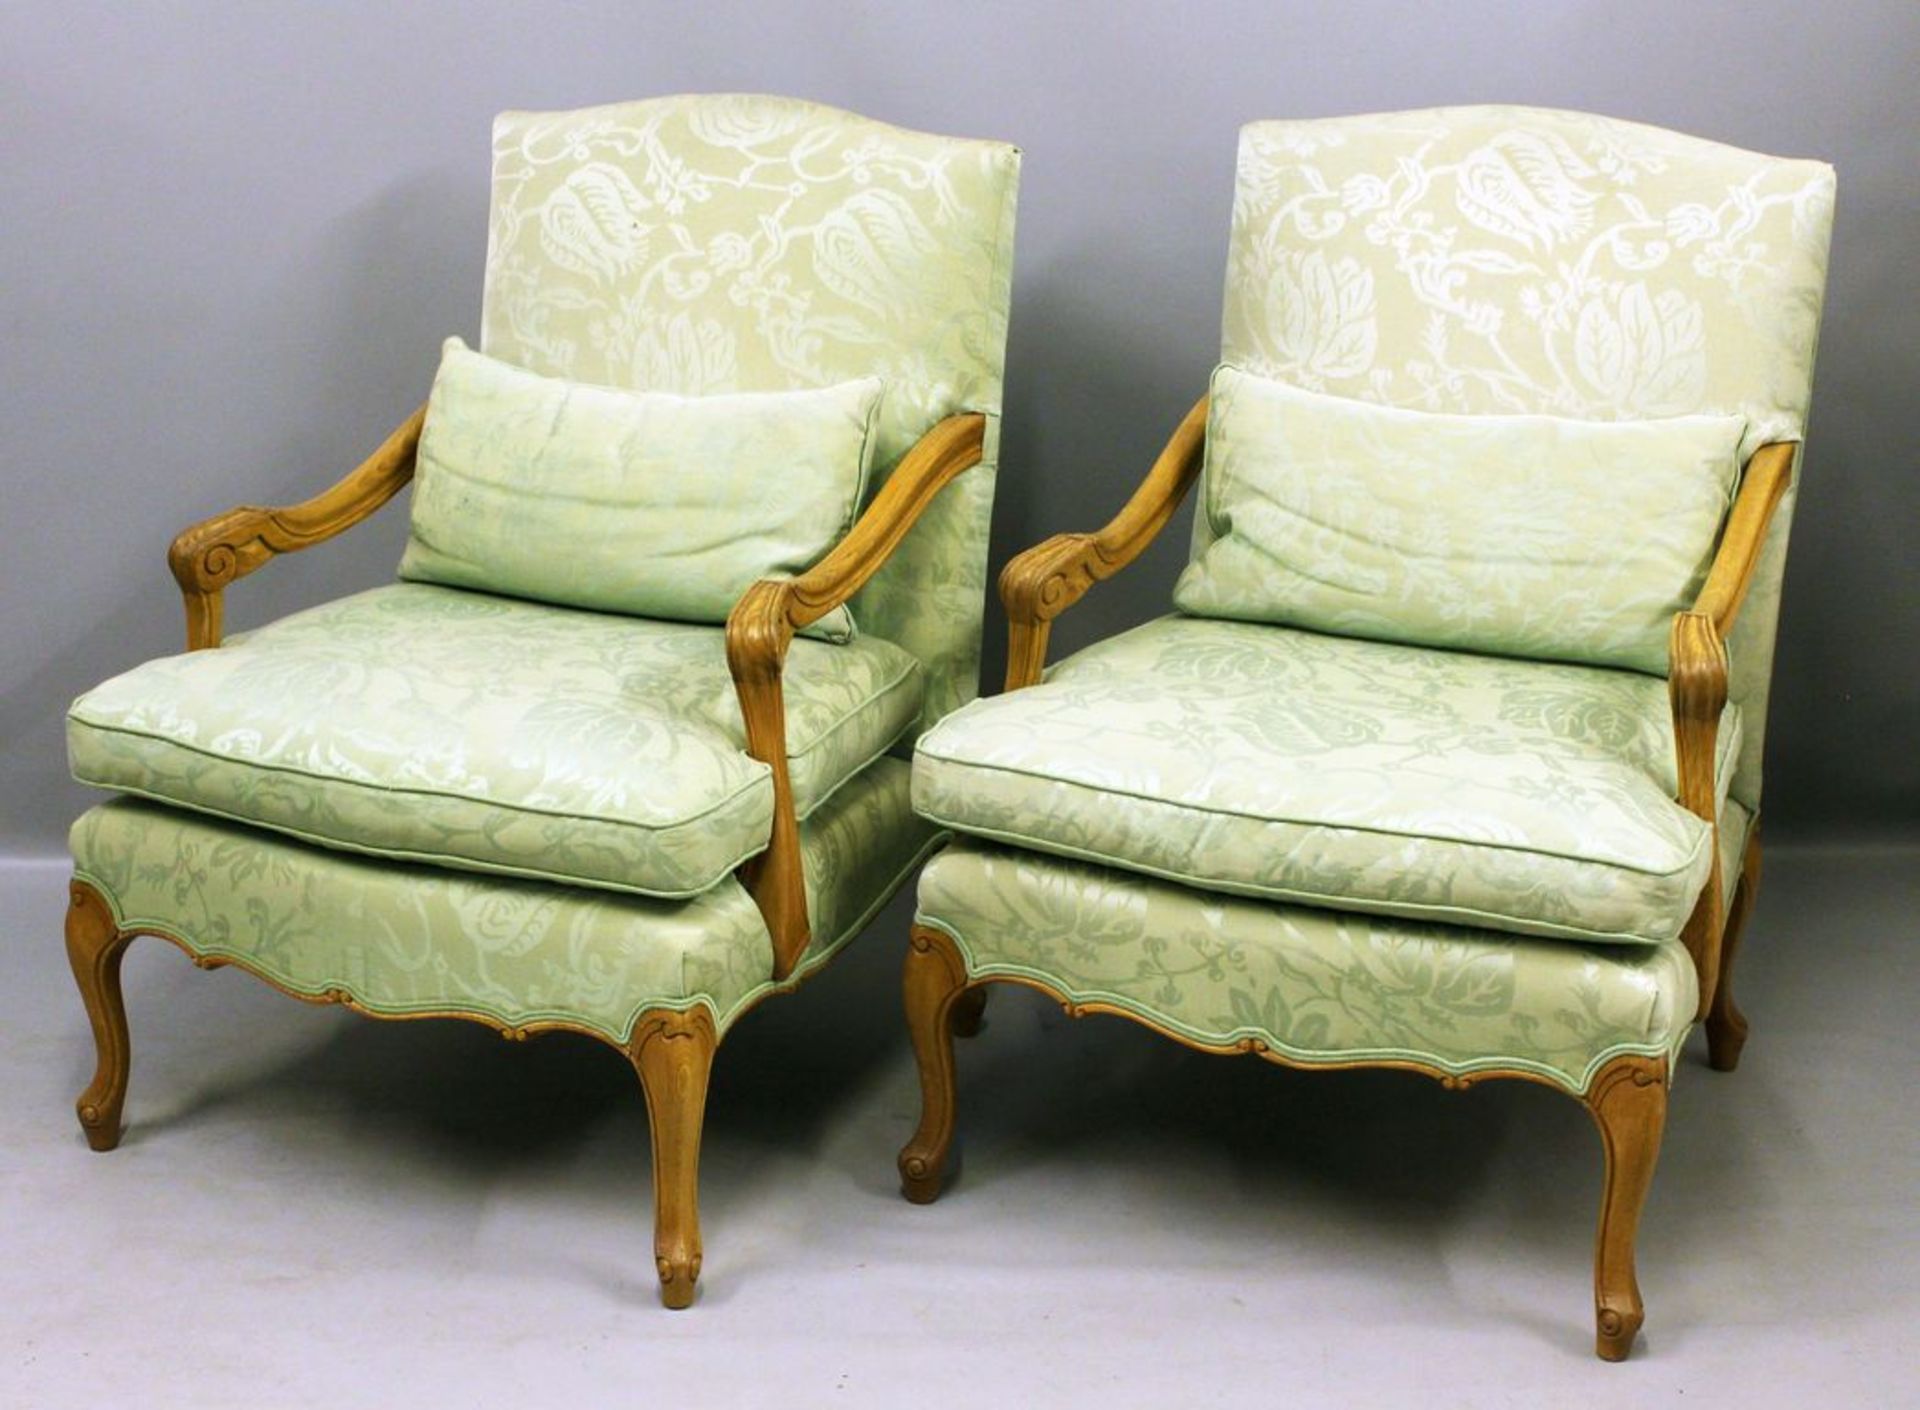 Paar Sessel. Hölzernes, gebogtes Gestell. Polsterung mit grünem Bezug. Gebrauchsspuren, fleckig.